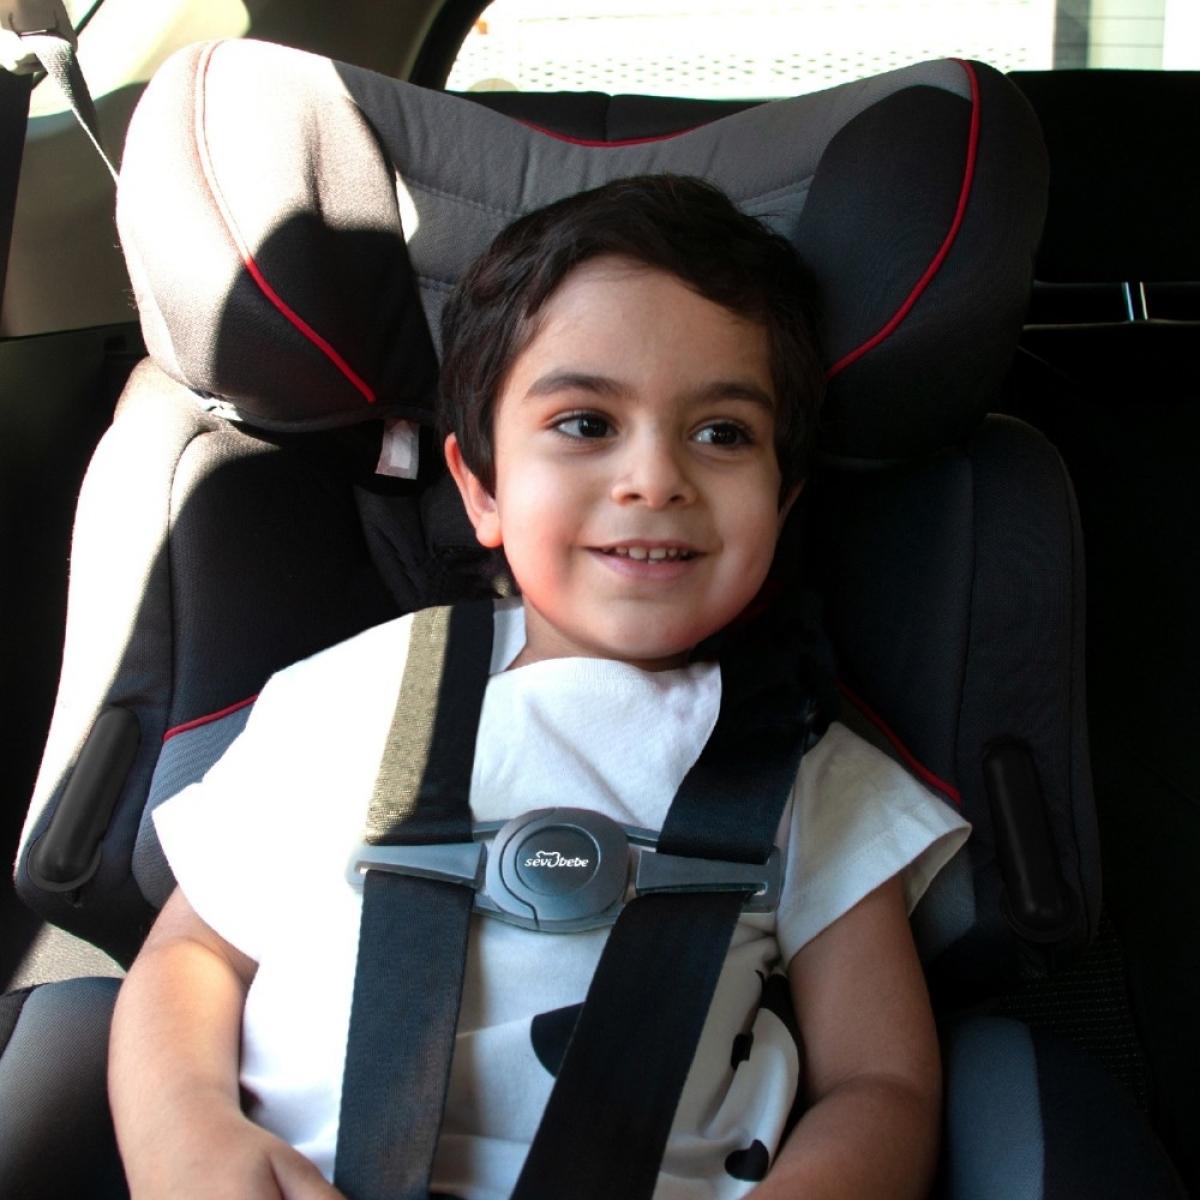 Sevi Bébé - Clip de ceinture pour siège auto et pousette